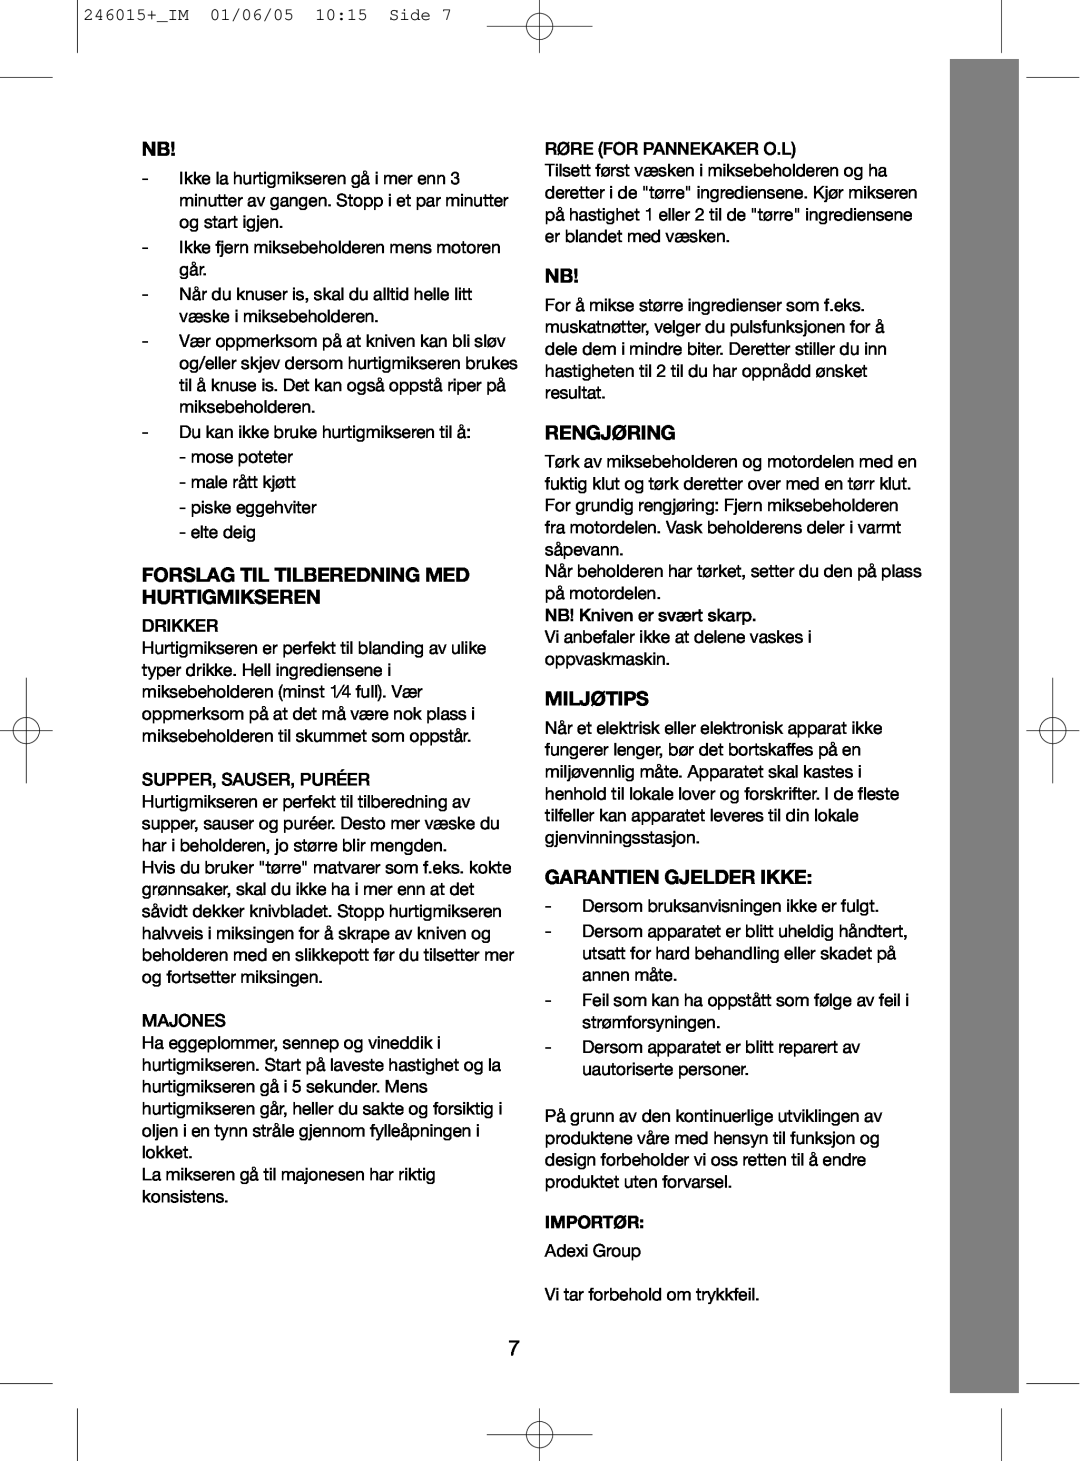 Melissa 646-071 manual Forslag Til Tilberedning Med Hurtigmikseren, Rengjøring, Miljøtips, Garantien Gjelder Ikke 